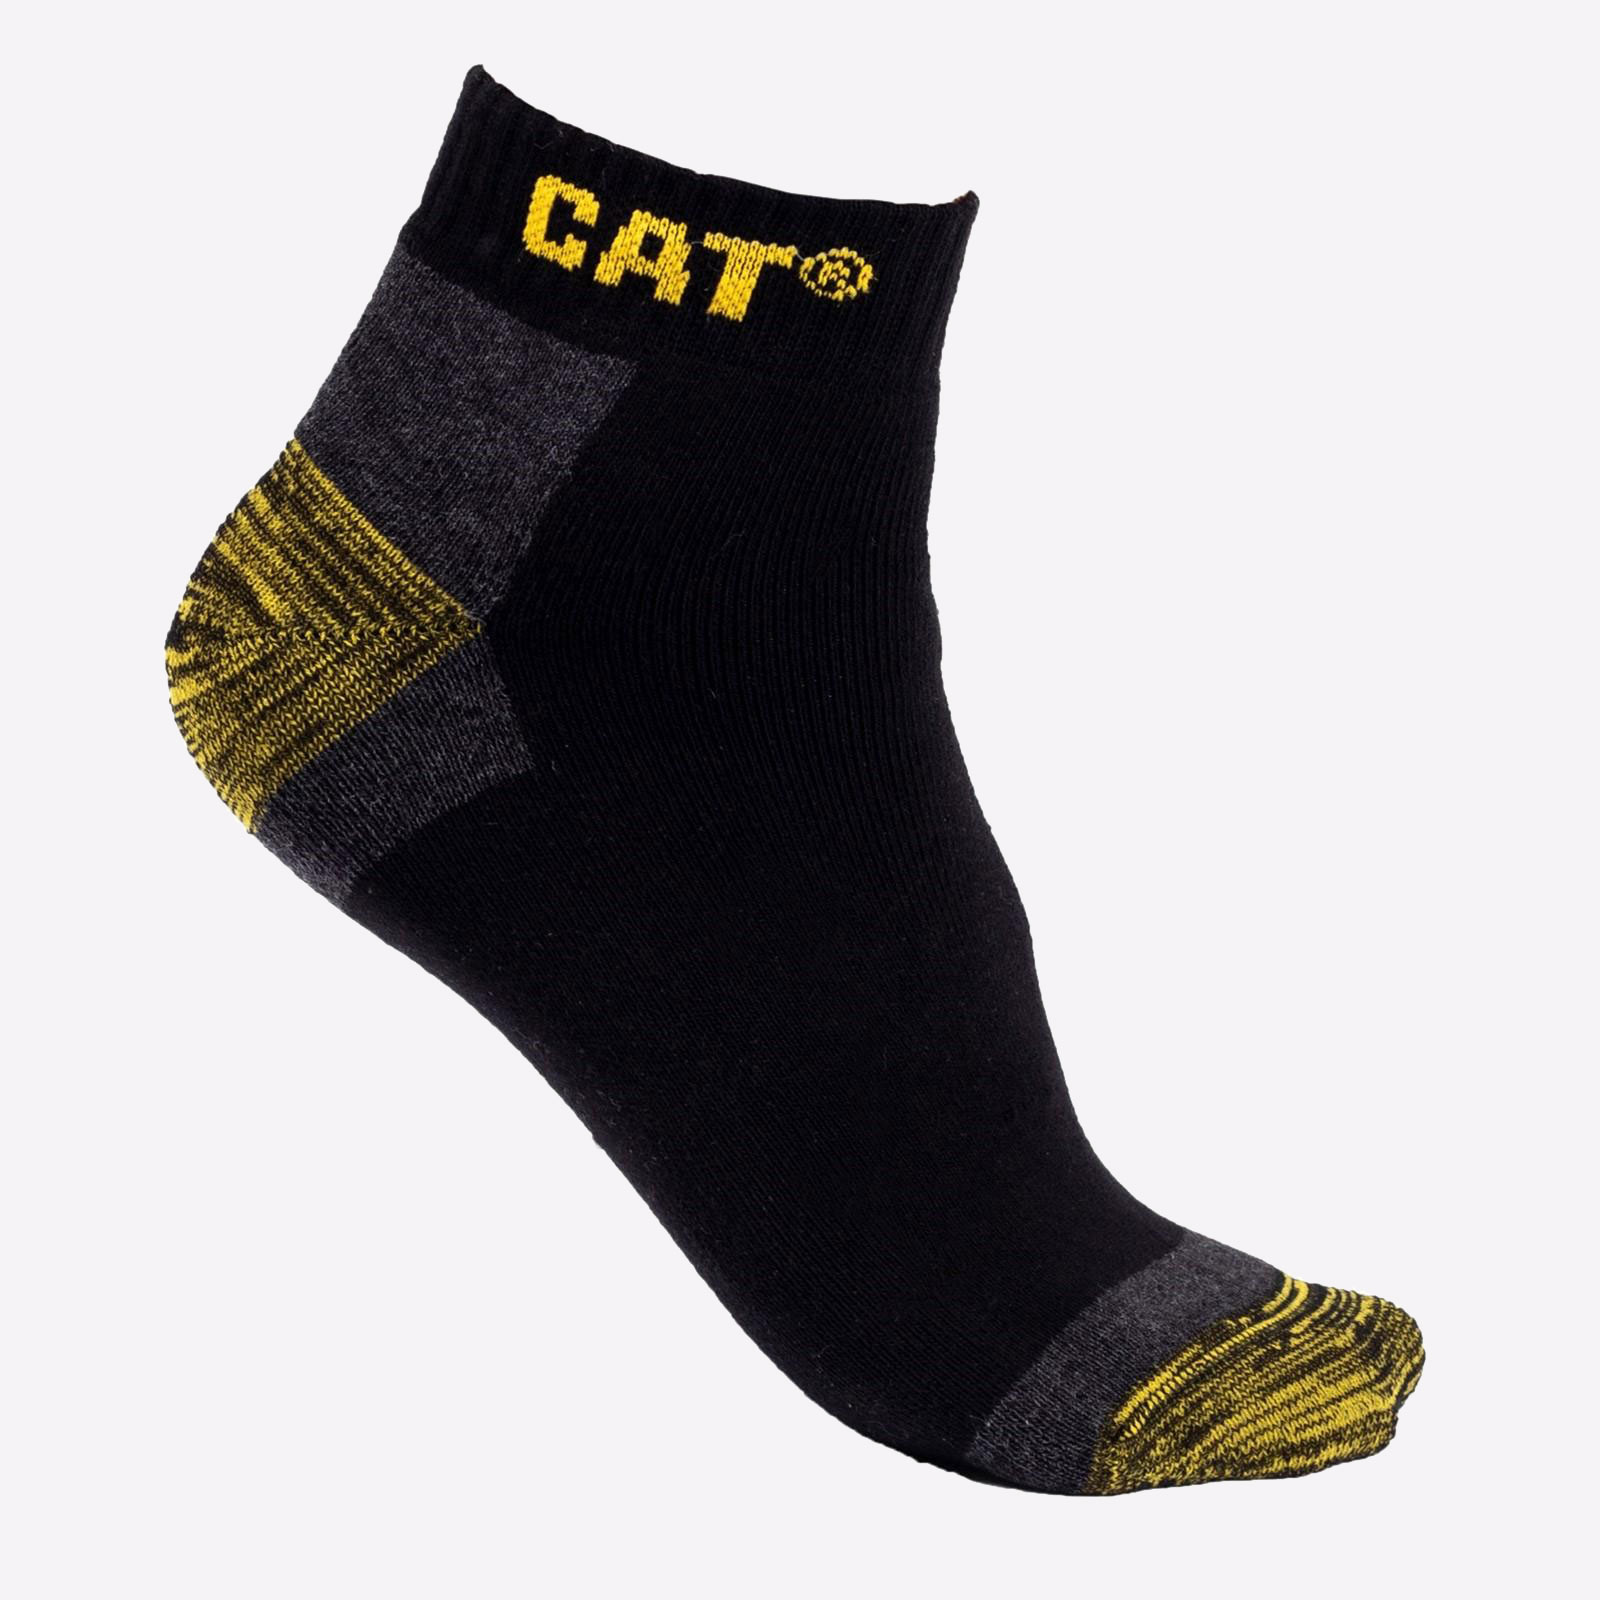 Caterpillar Premium Work Socks Mens - GRD-31896-54604-01